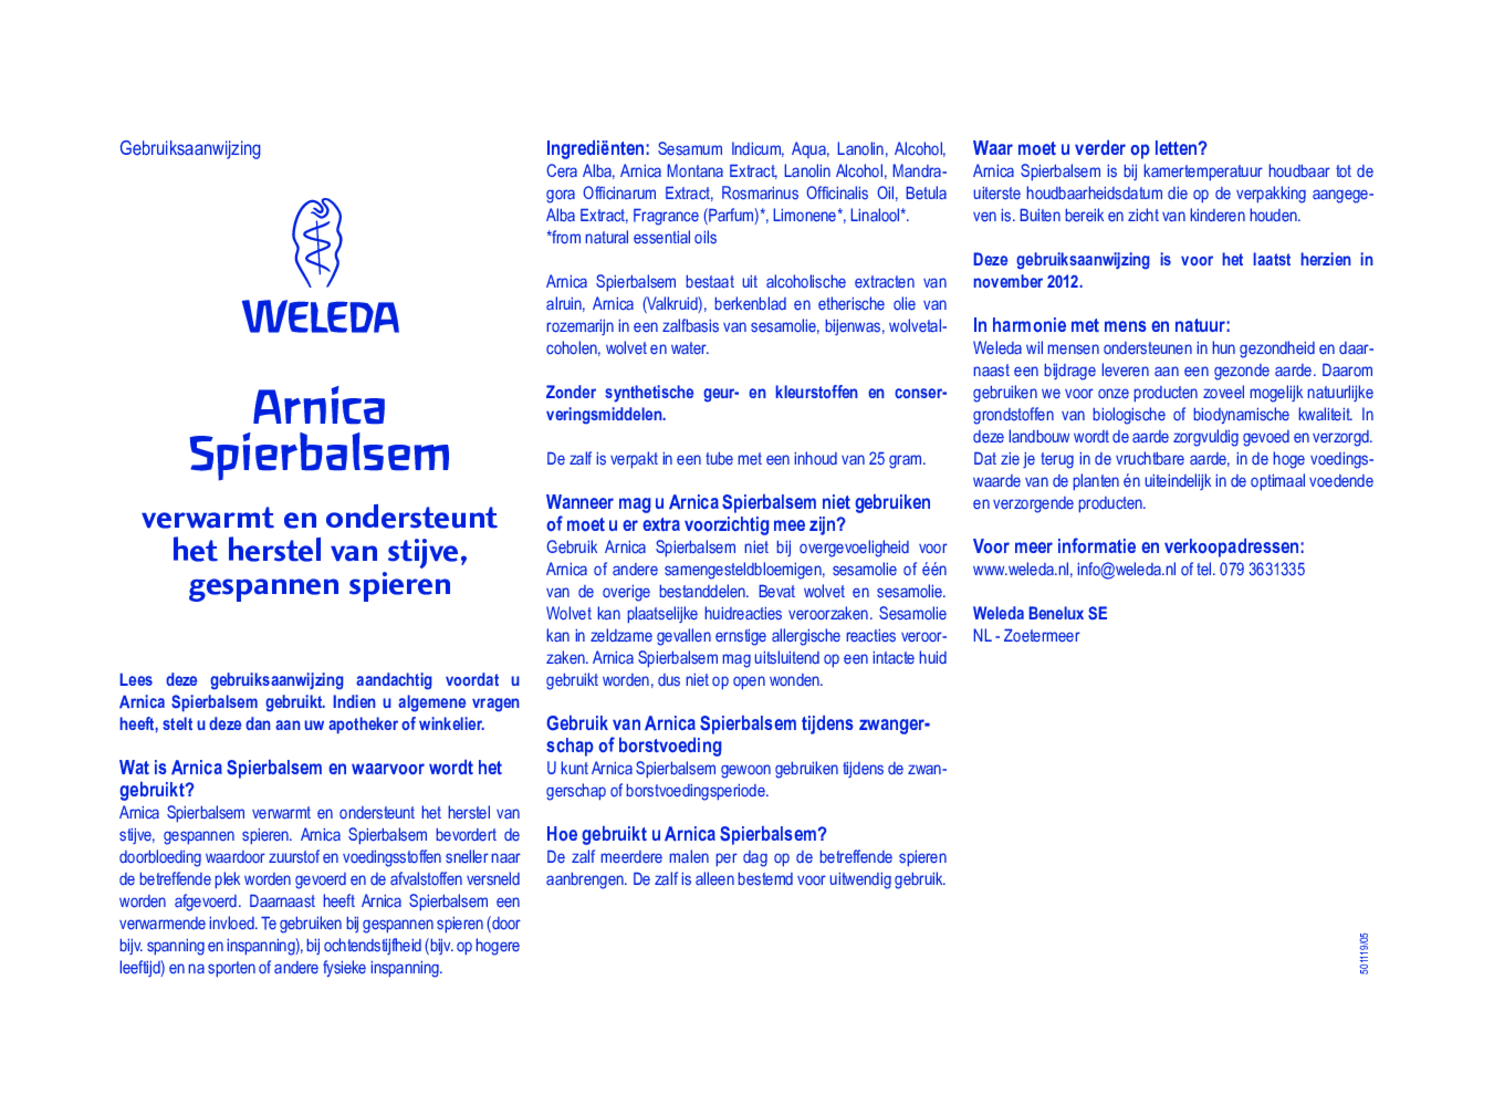 Arnica Spierbalsem afbeelding van document #1, gebruiksaanwijzing